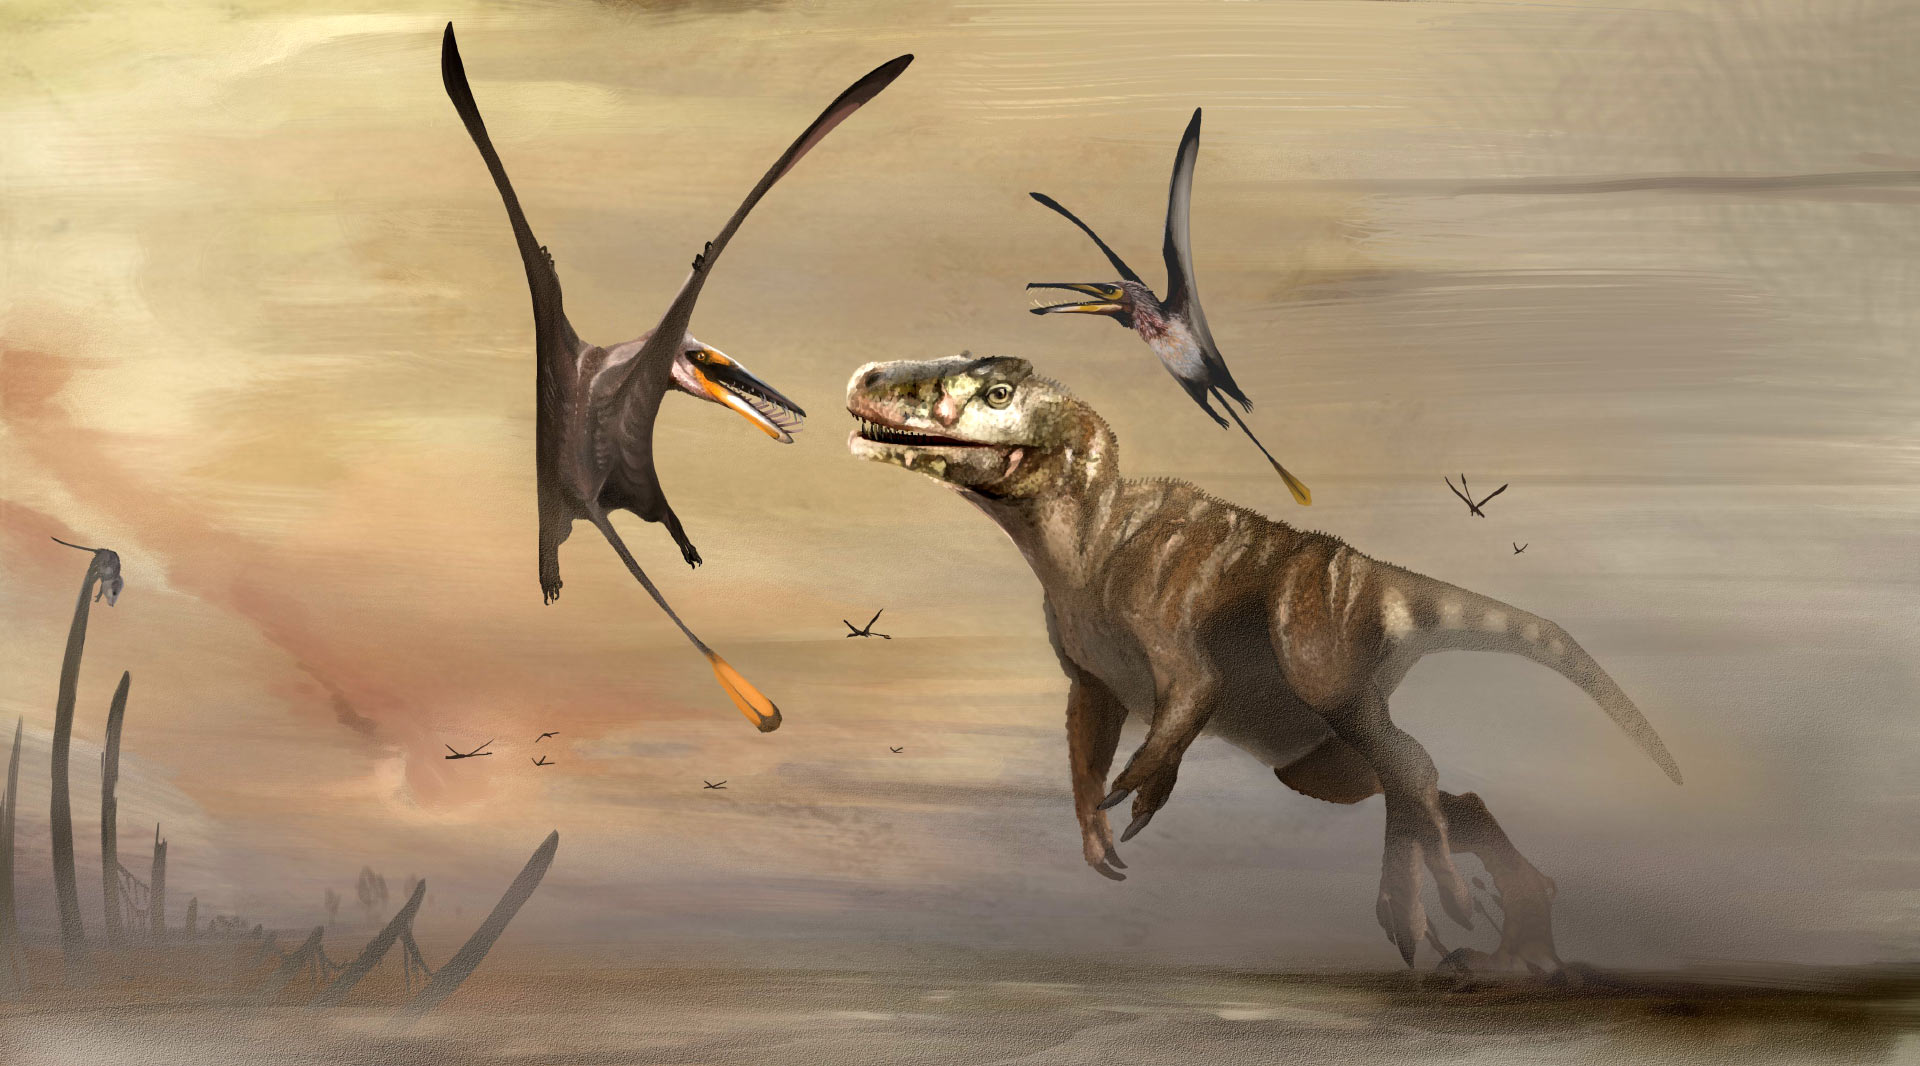 古生物学家在苏格兰斯凯岛发现侏罗纪时期最大翼龙化石Dearc sgiathanach